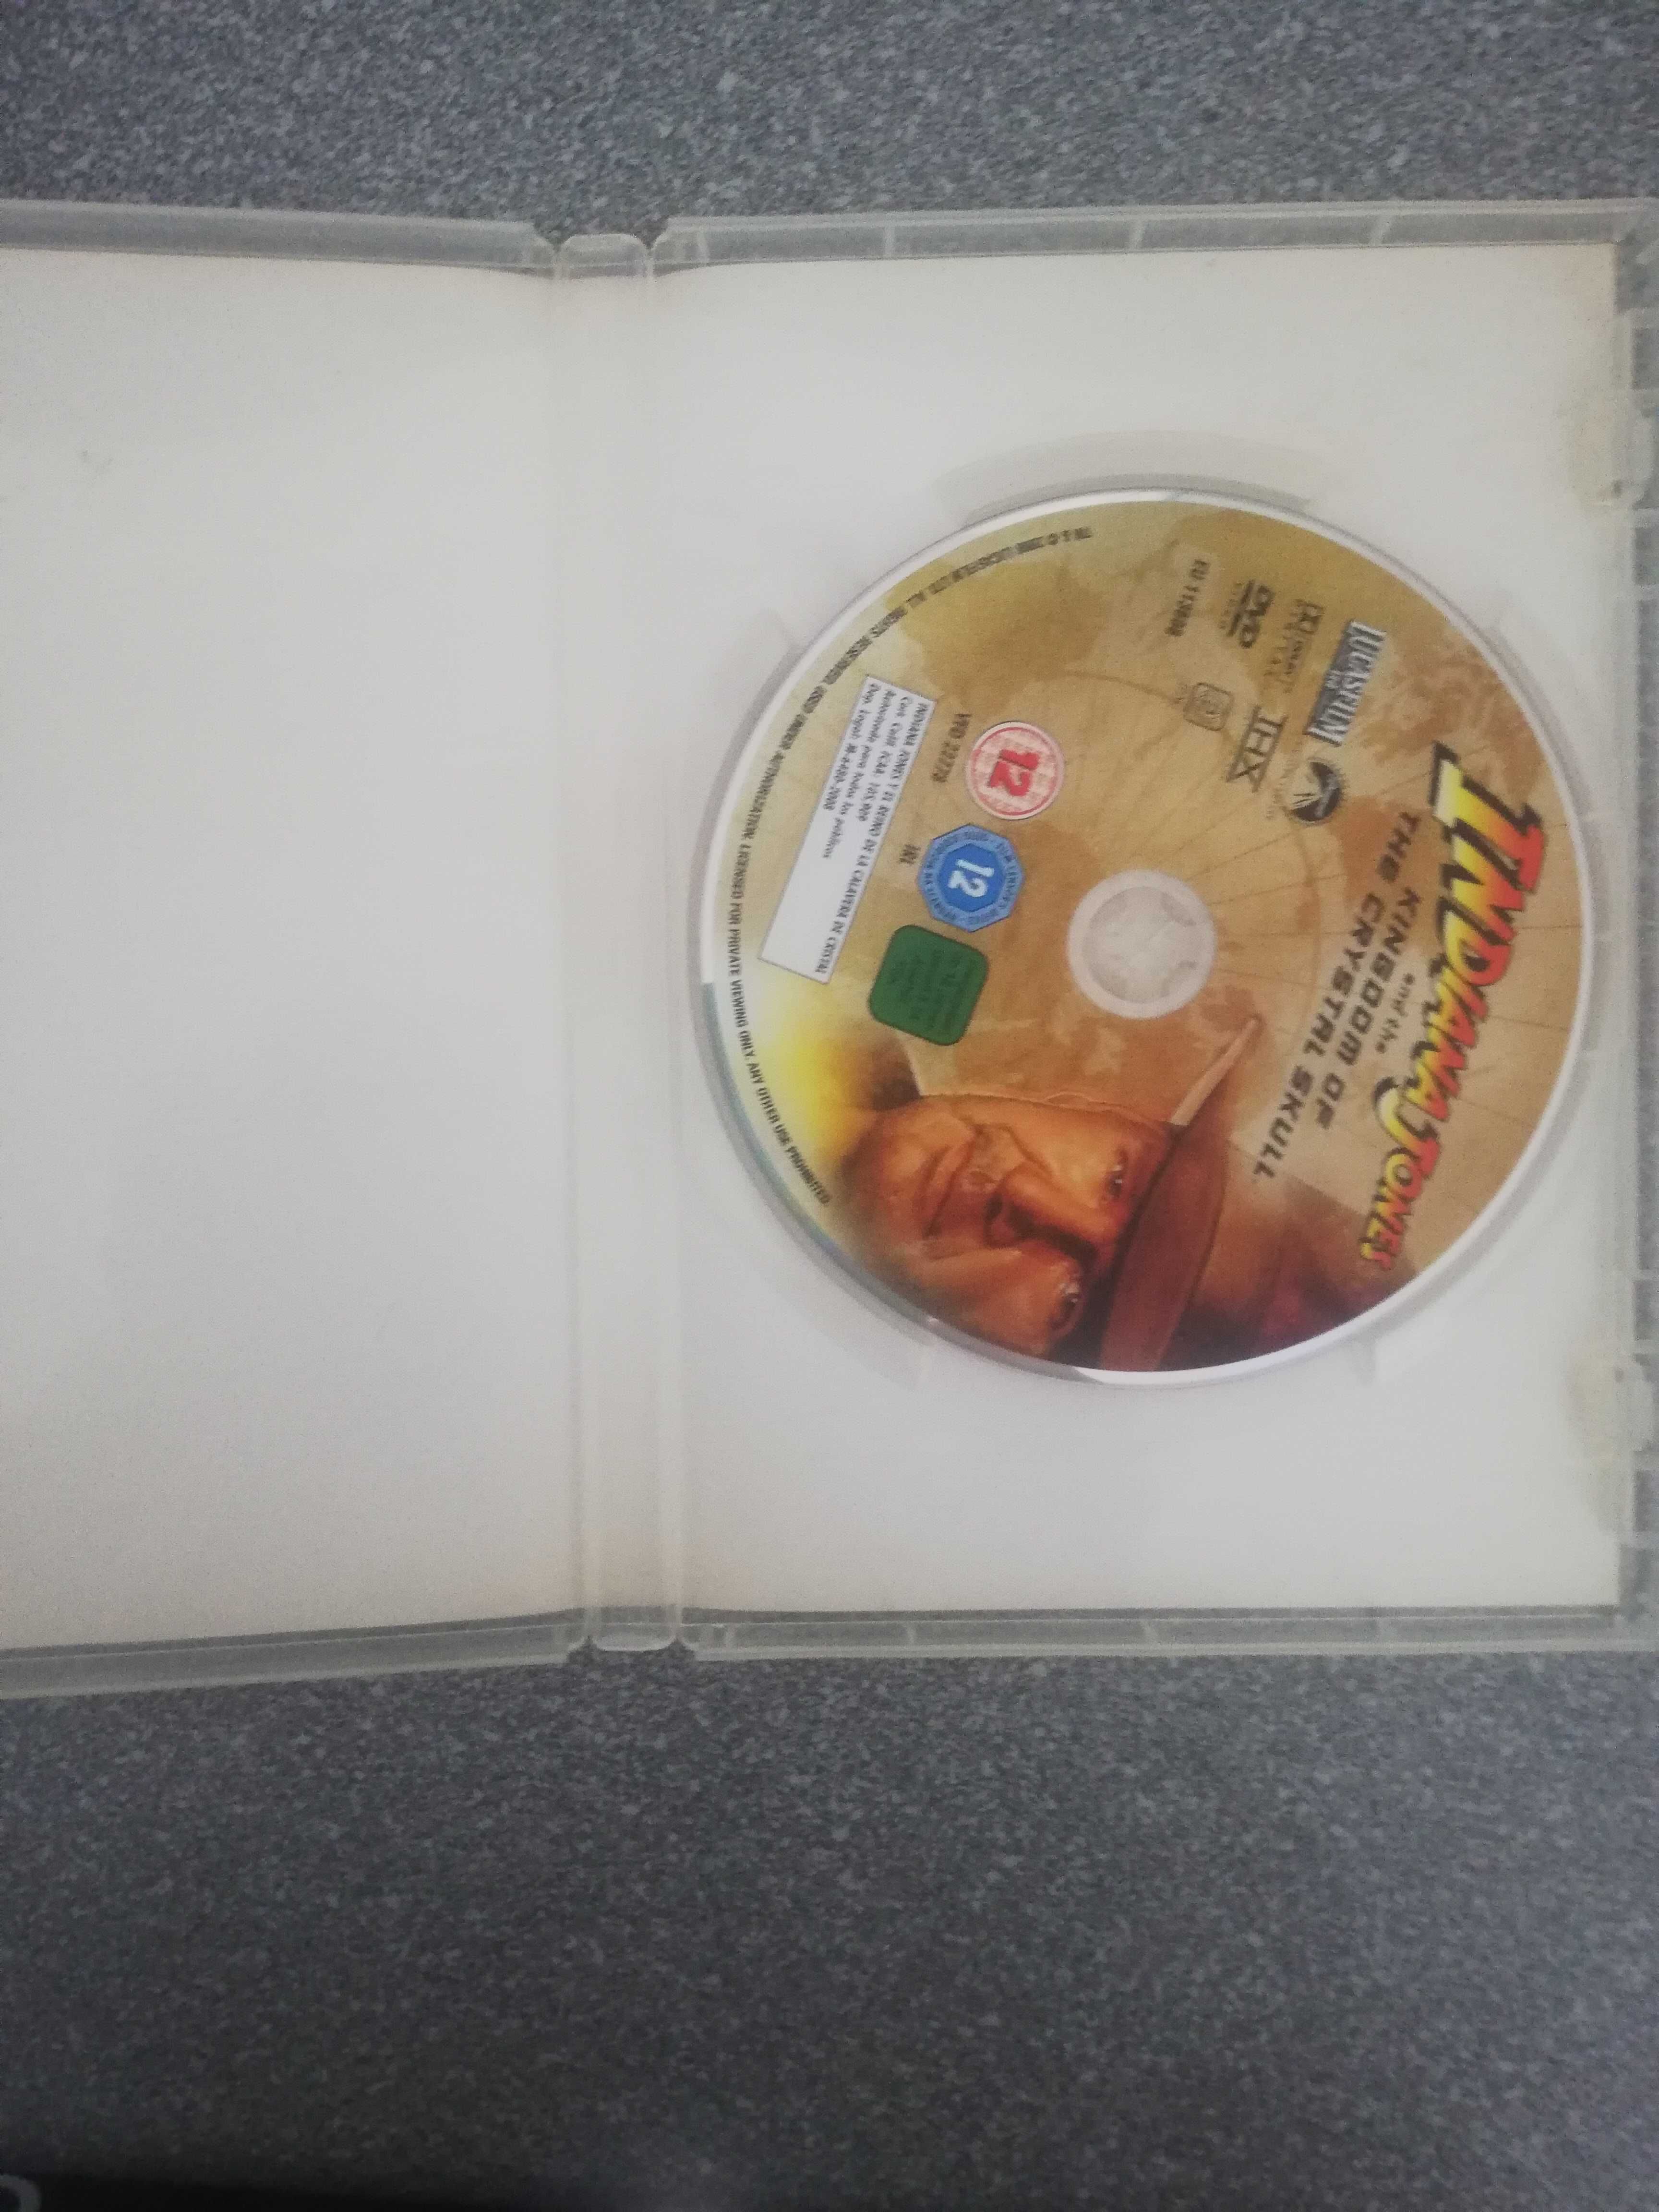 Indiana Jones -Królestwo kryształowej czaszki dvd